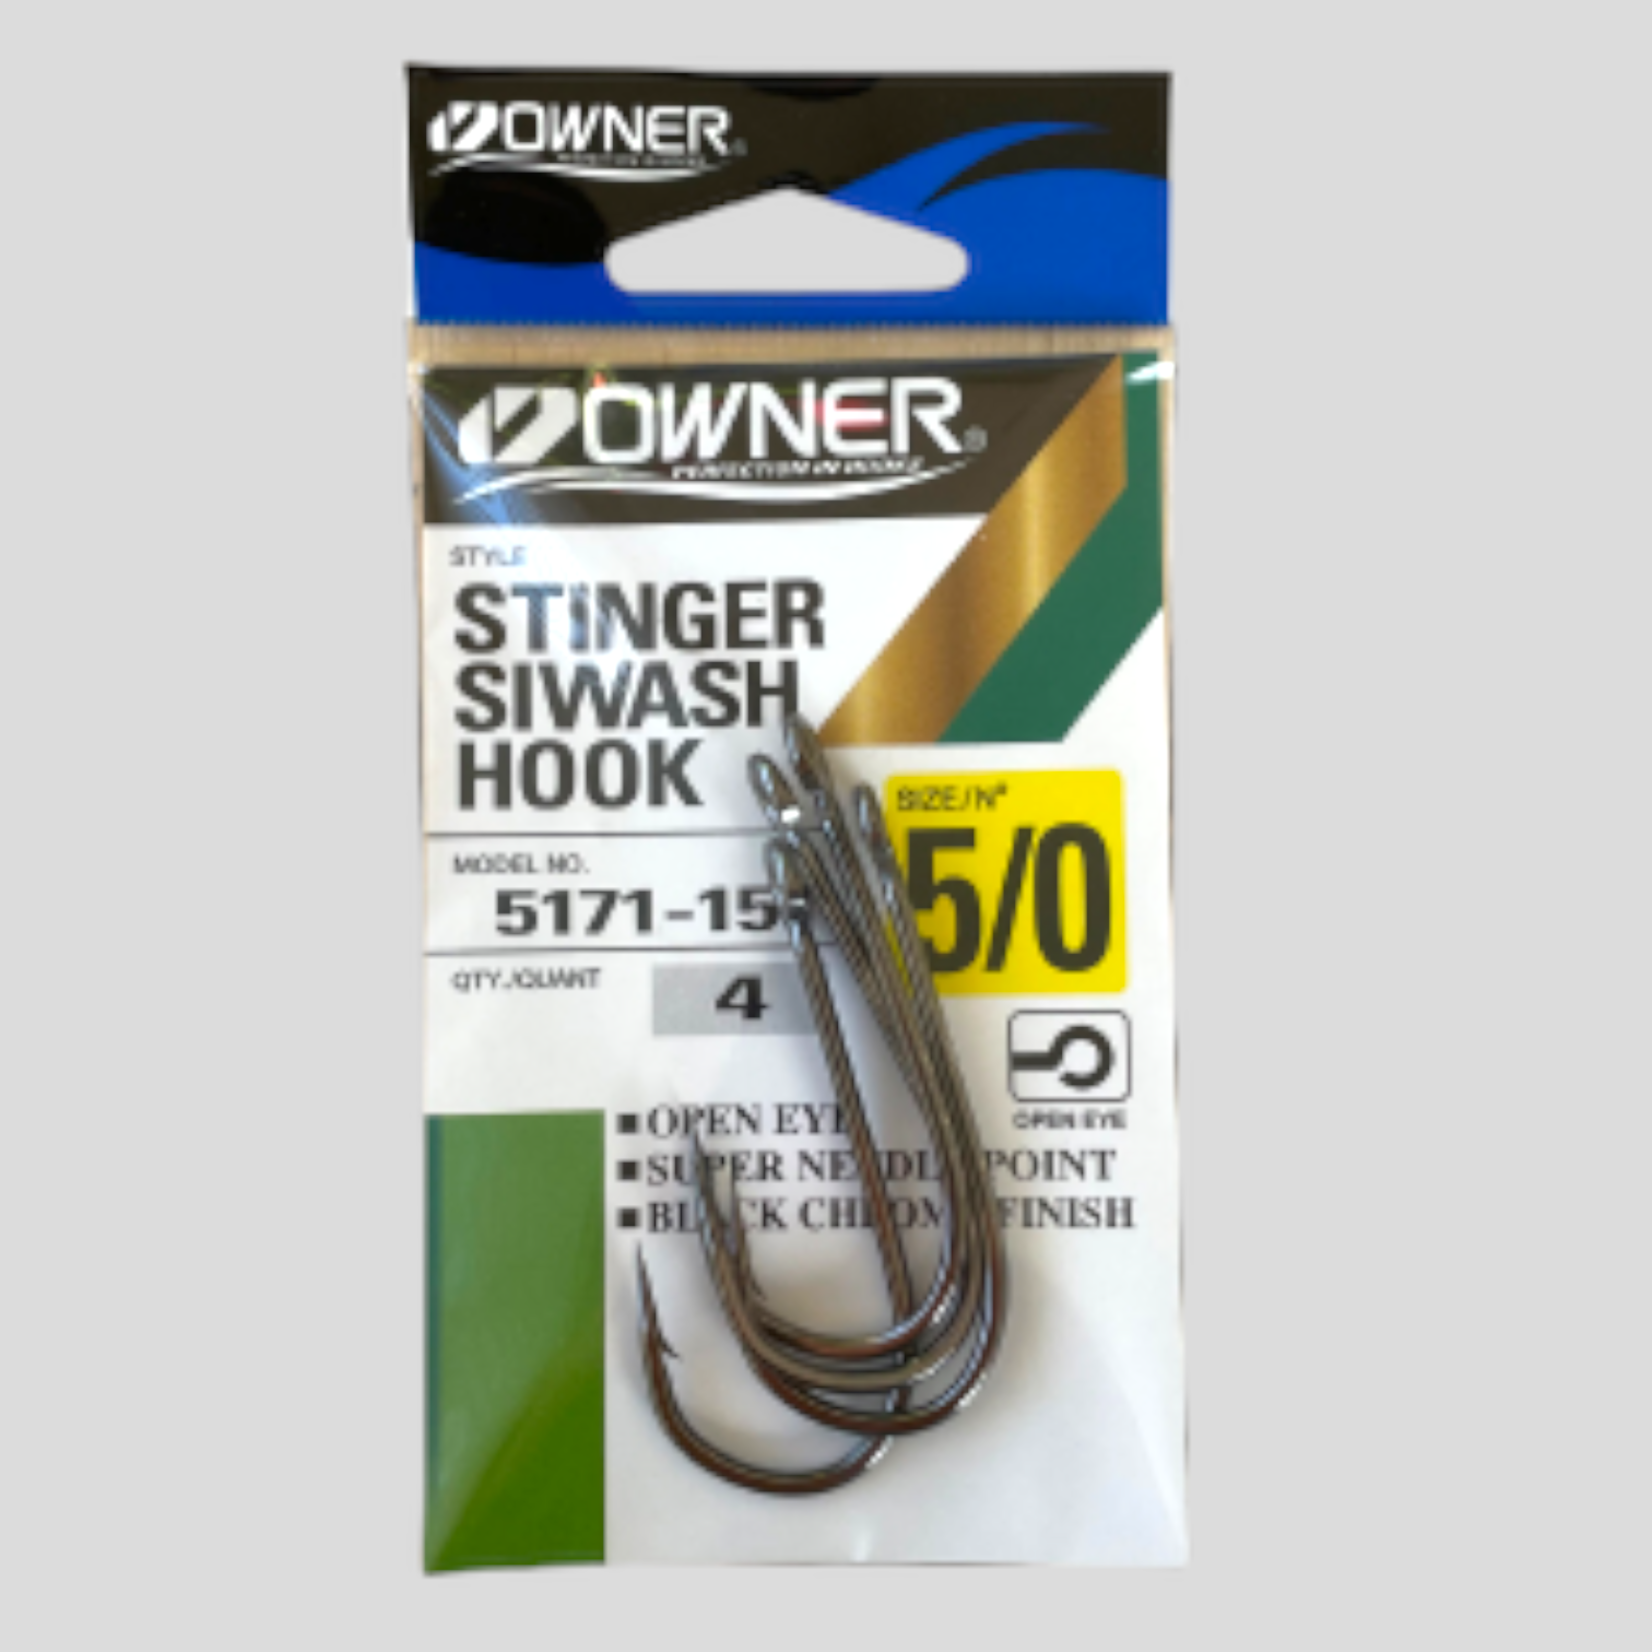 Owner Owner Stinger Siwash Hooks